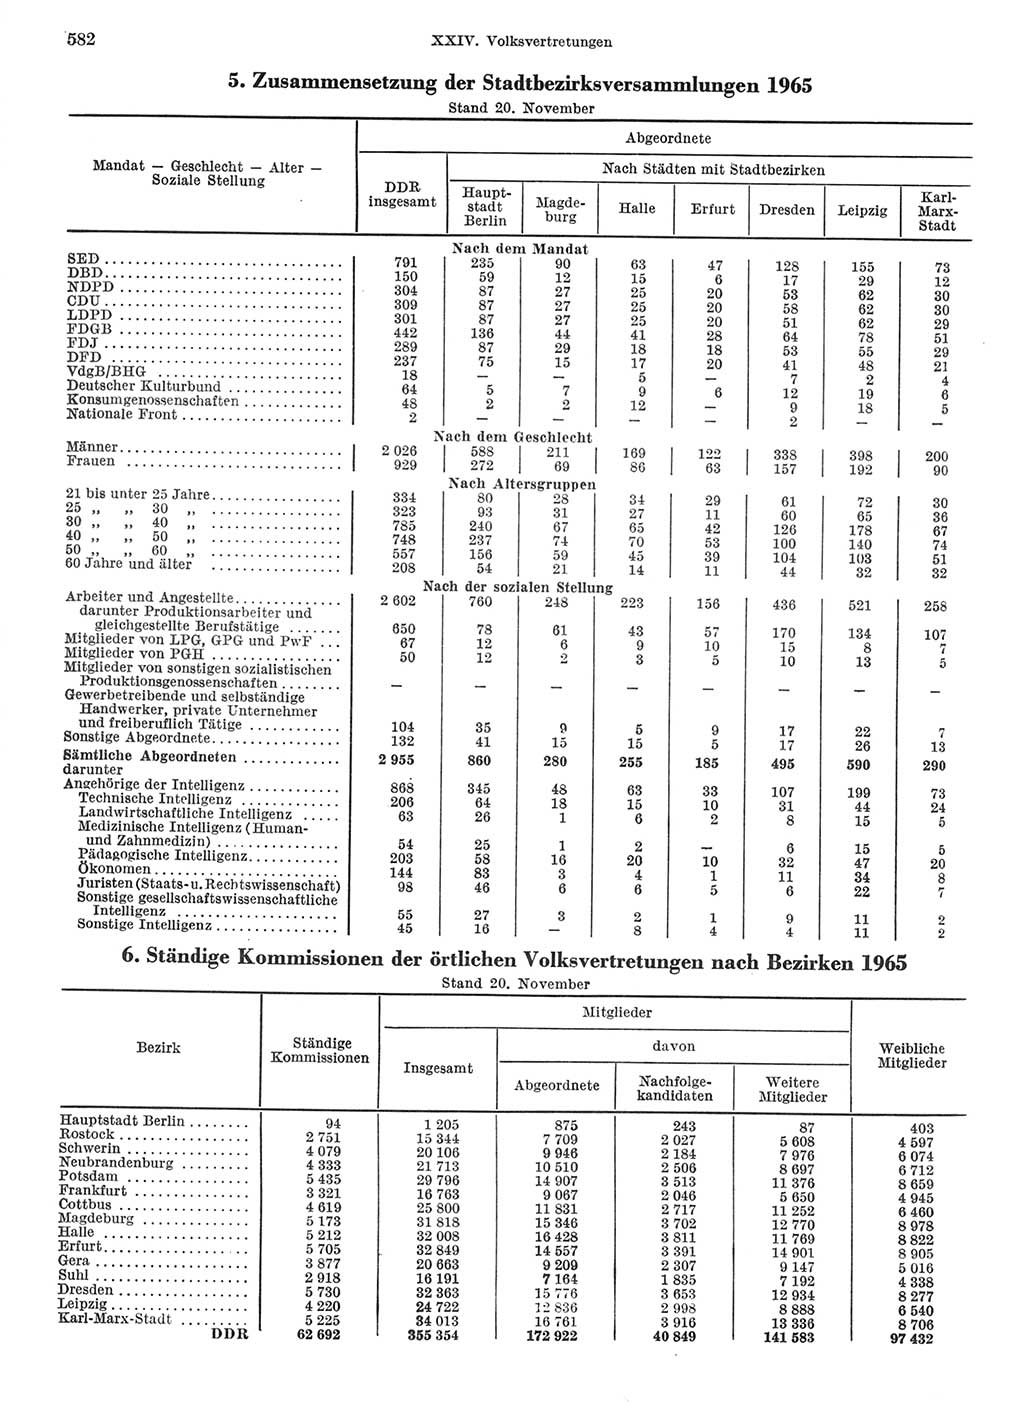 Statistisches Jahrbuch der Deutschen Demokratischen Republik (DDR) 1968, Seite 582 (Stat. Jb. DDR 1968, S. 582)